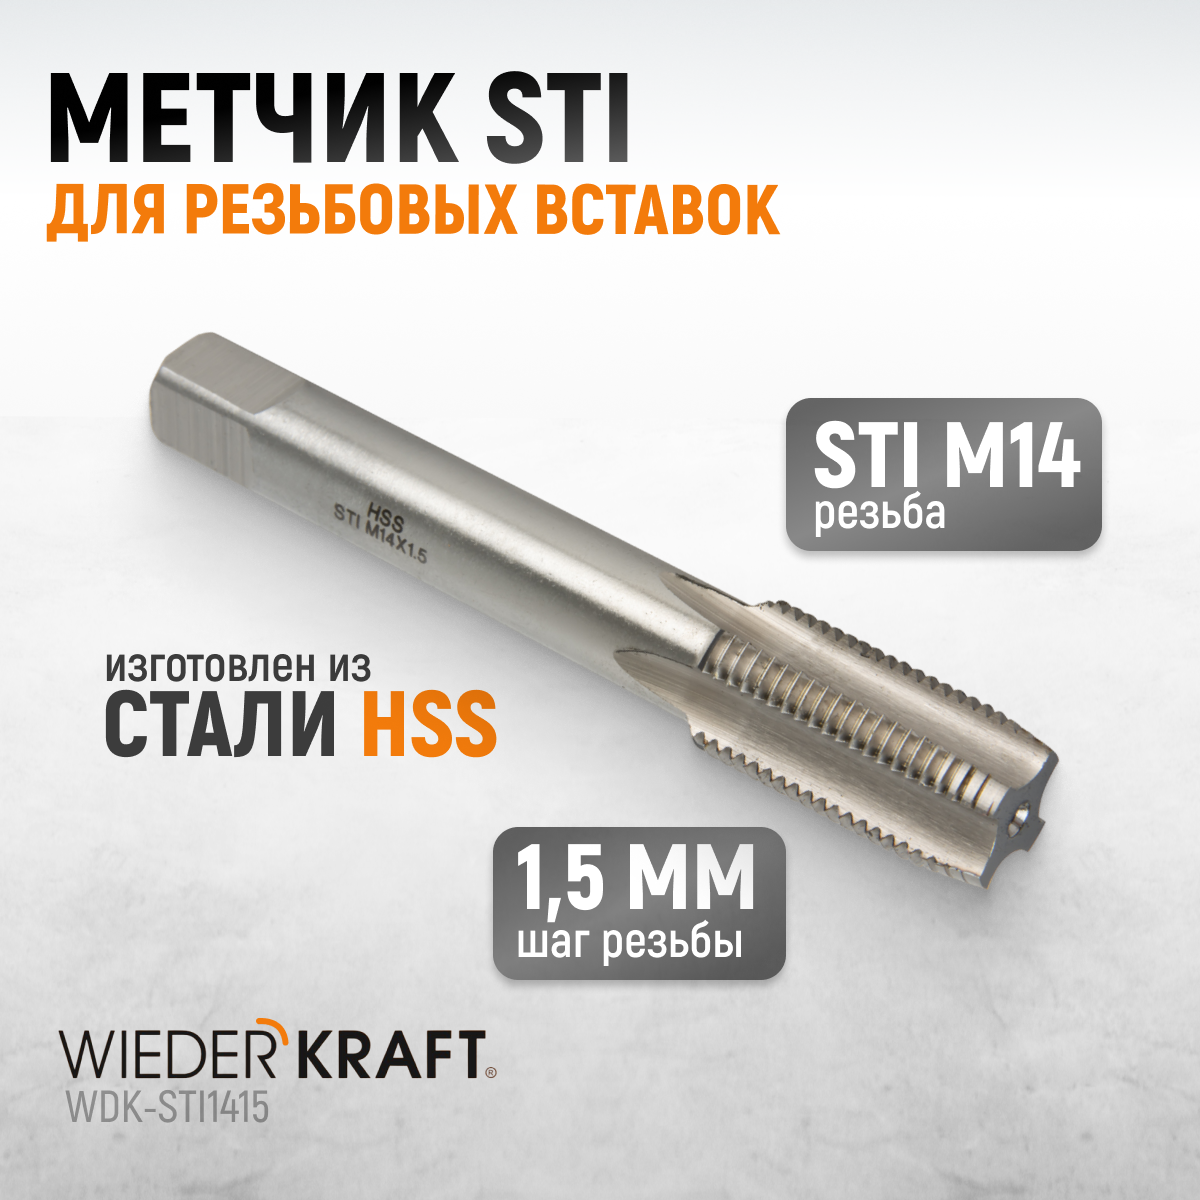 Метчик STI для резьбовых вставок WIEDERKRAFT М14x1,5, HSS WDK-STI1415